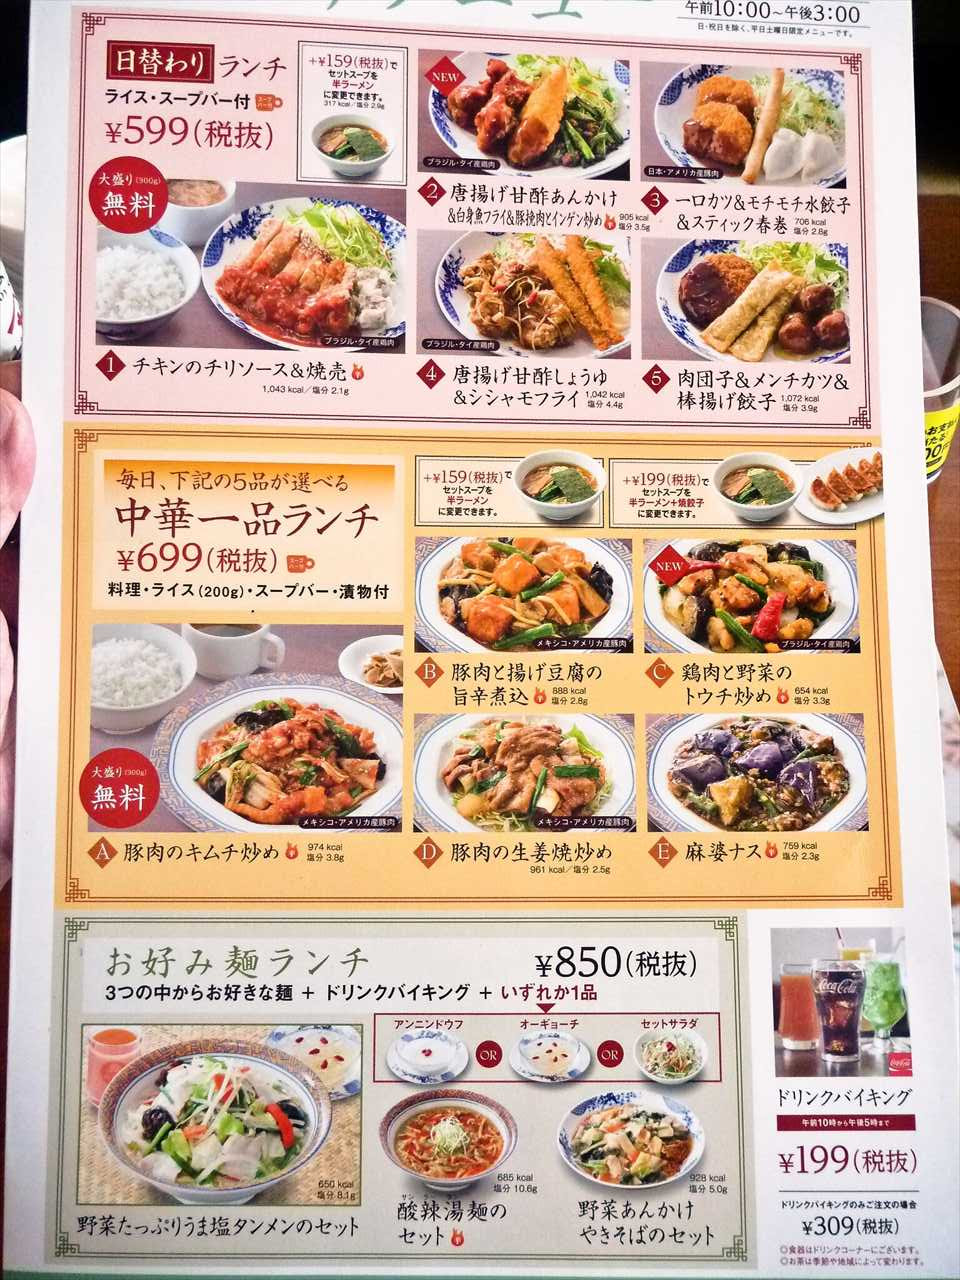 ベストセレクション 葛西 臨海 公園 食べ物 500 トップ画像のレシピ